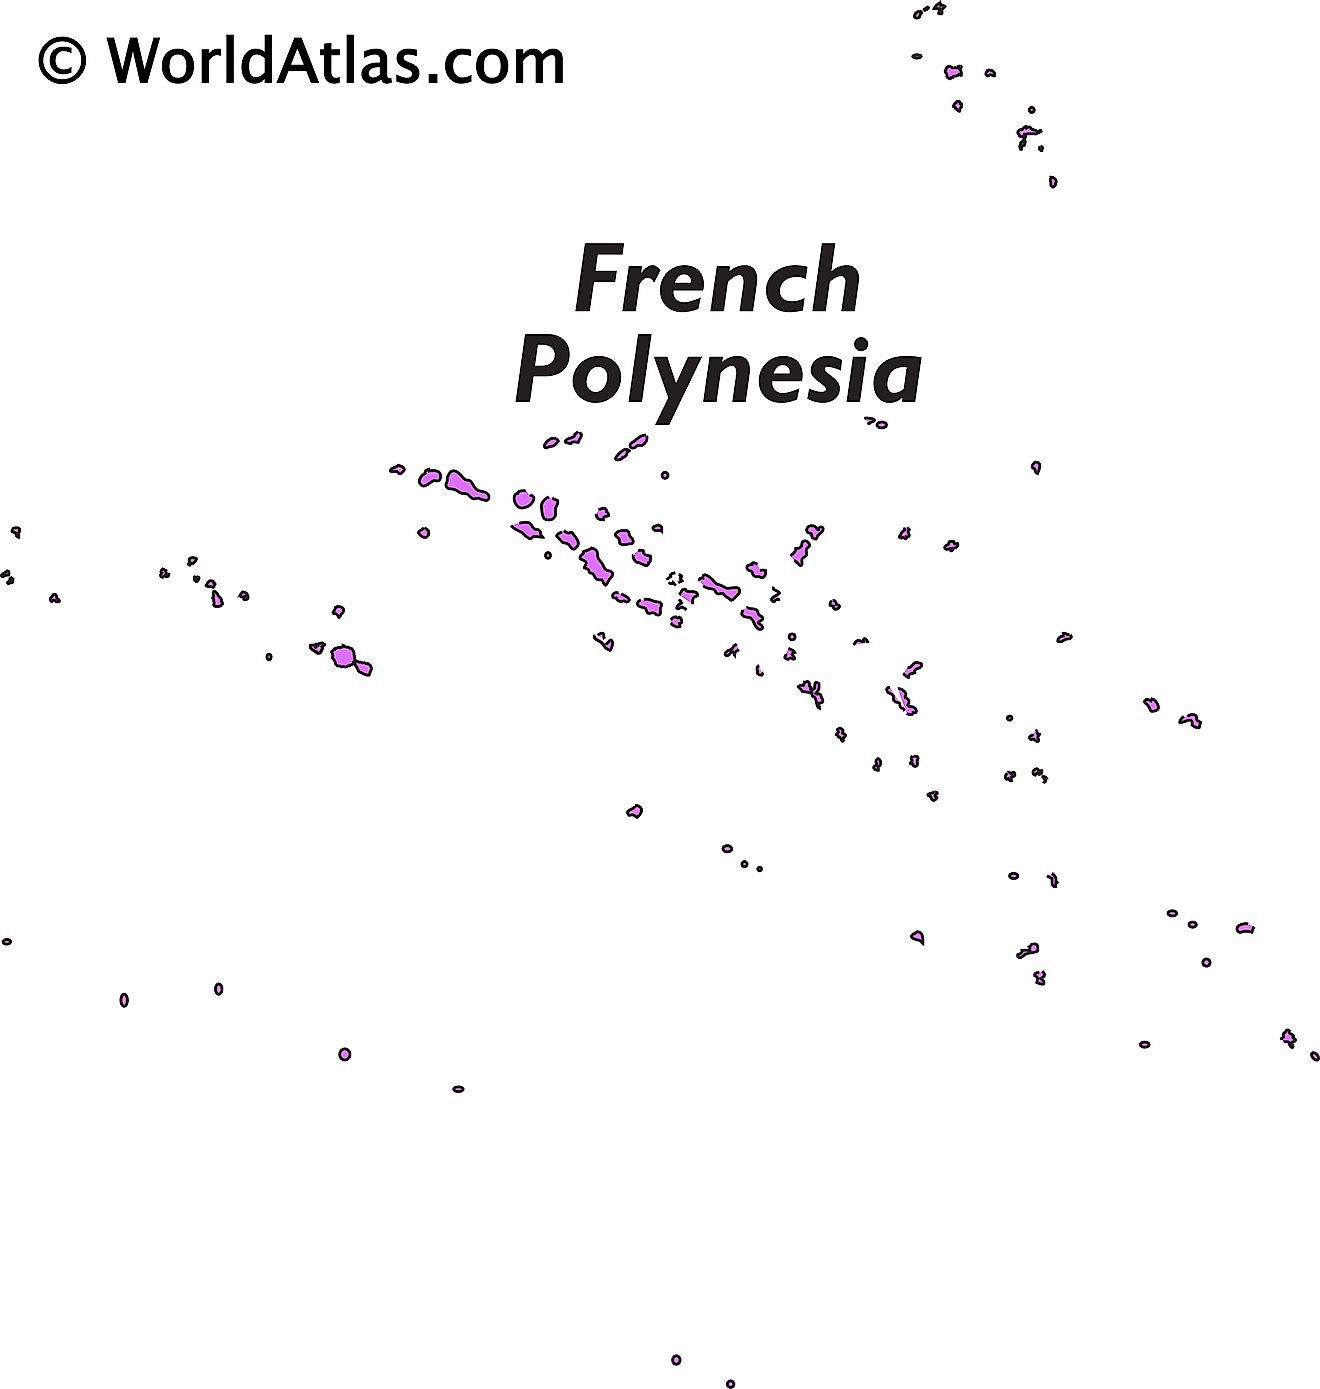 Mapa de contorno de la Polinesia Francesa